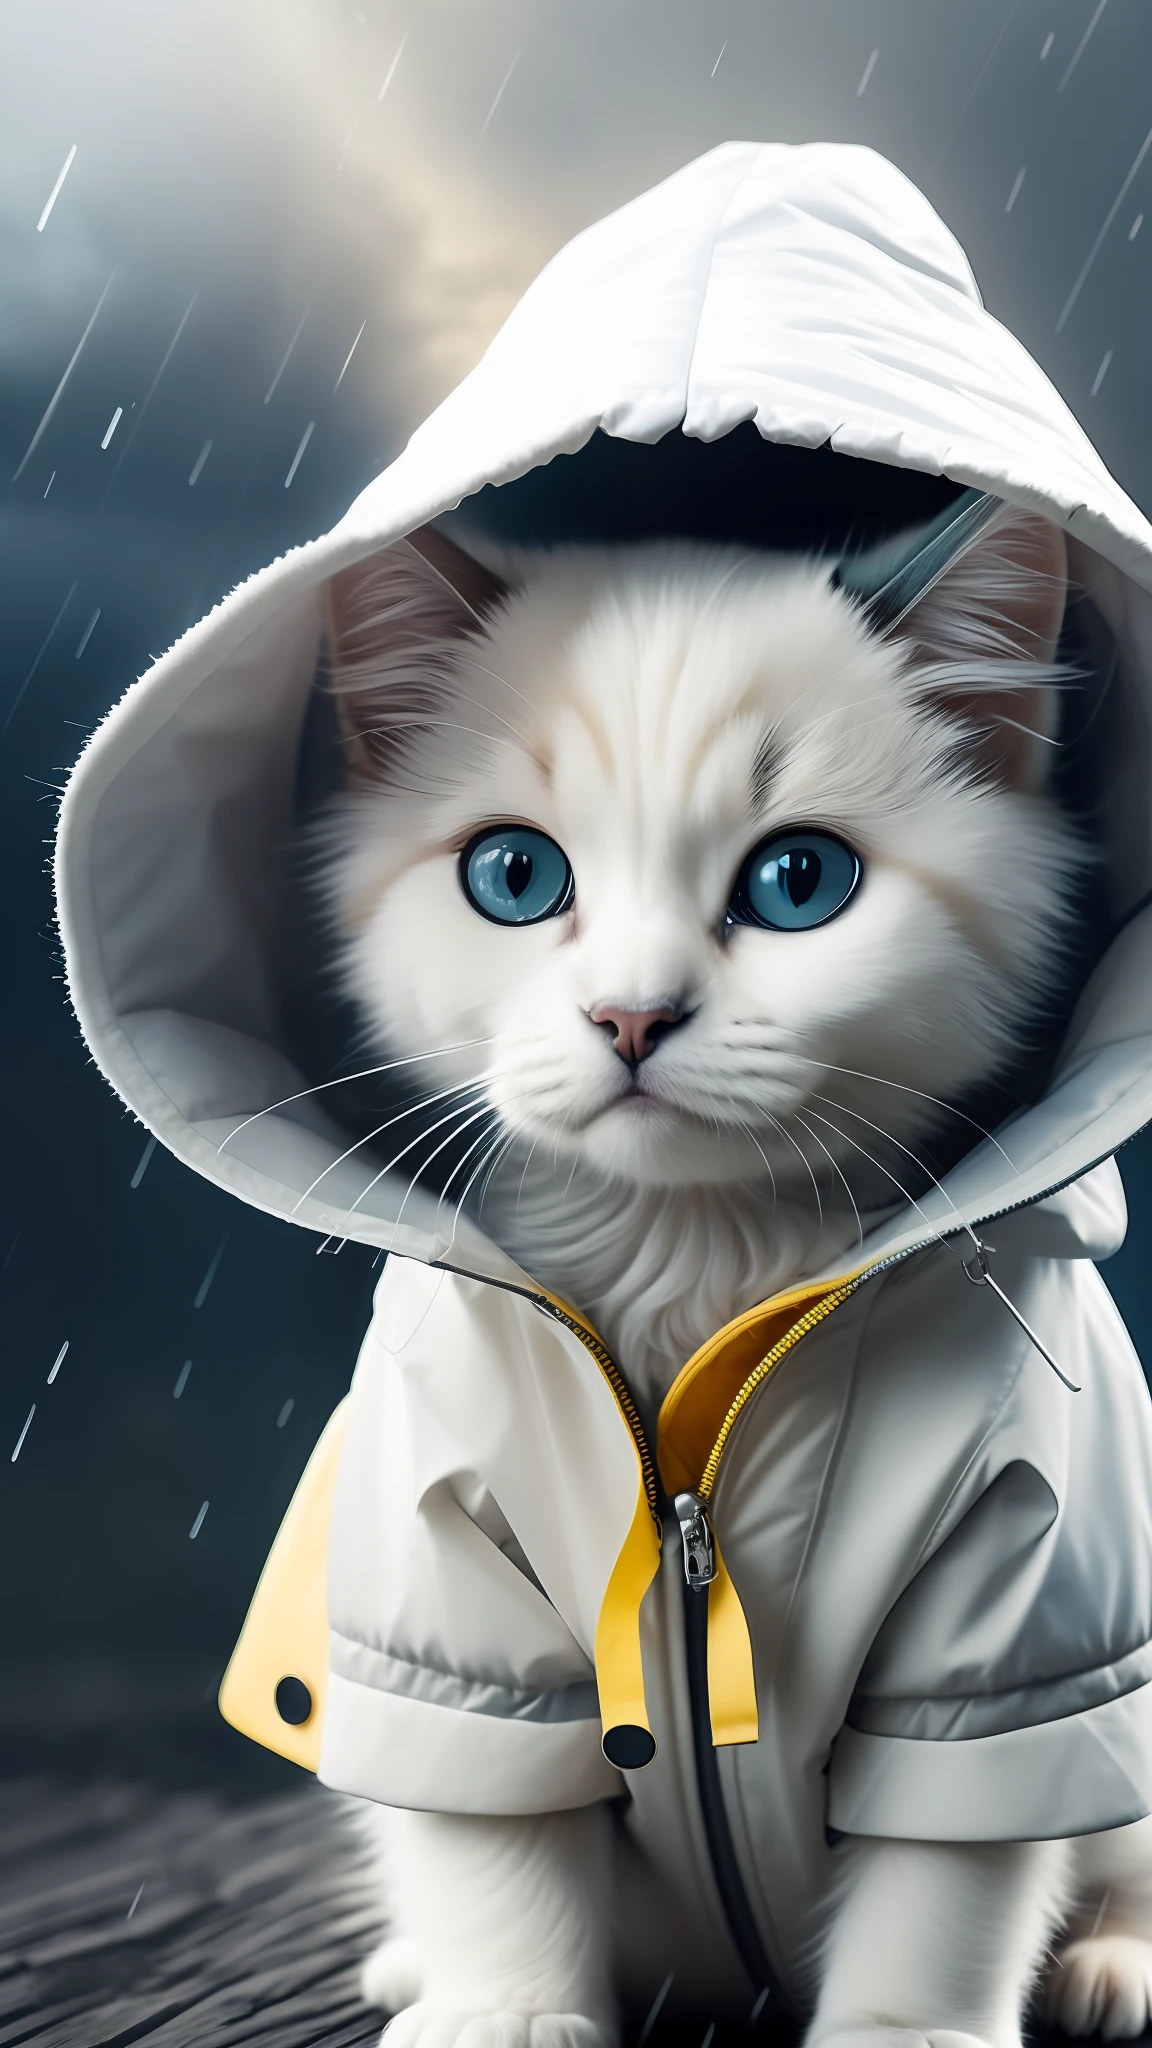 جرو قطة بيضاء اللون ترتدي معطف واق من المطر, طقس عاصف, مع إضاءة سينمائية وتفاصيل واقعية للغاية, صورة واقعية, التصوير السينمائي, مفصلة بشكل لا يصدق, إضاءة الفيلم